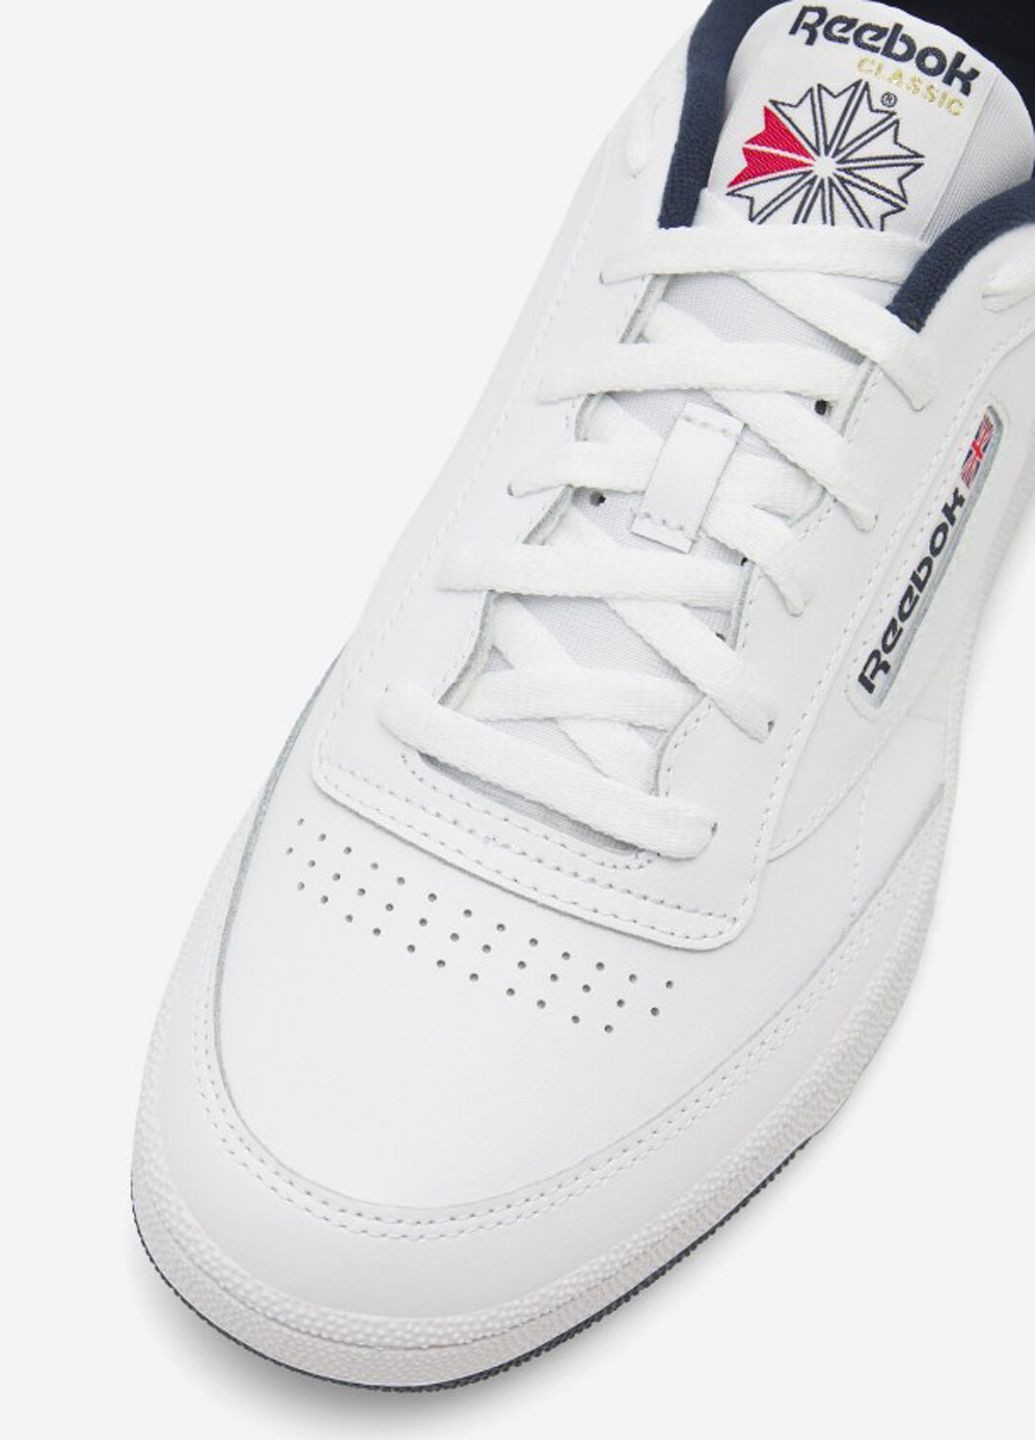 Білі кросівки чоловічі білі шкіряні Reebok SCRAP AR0457